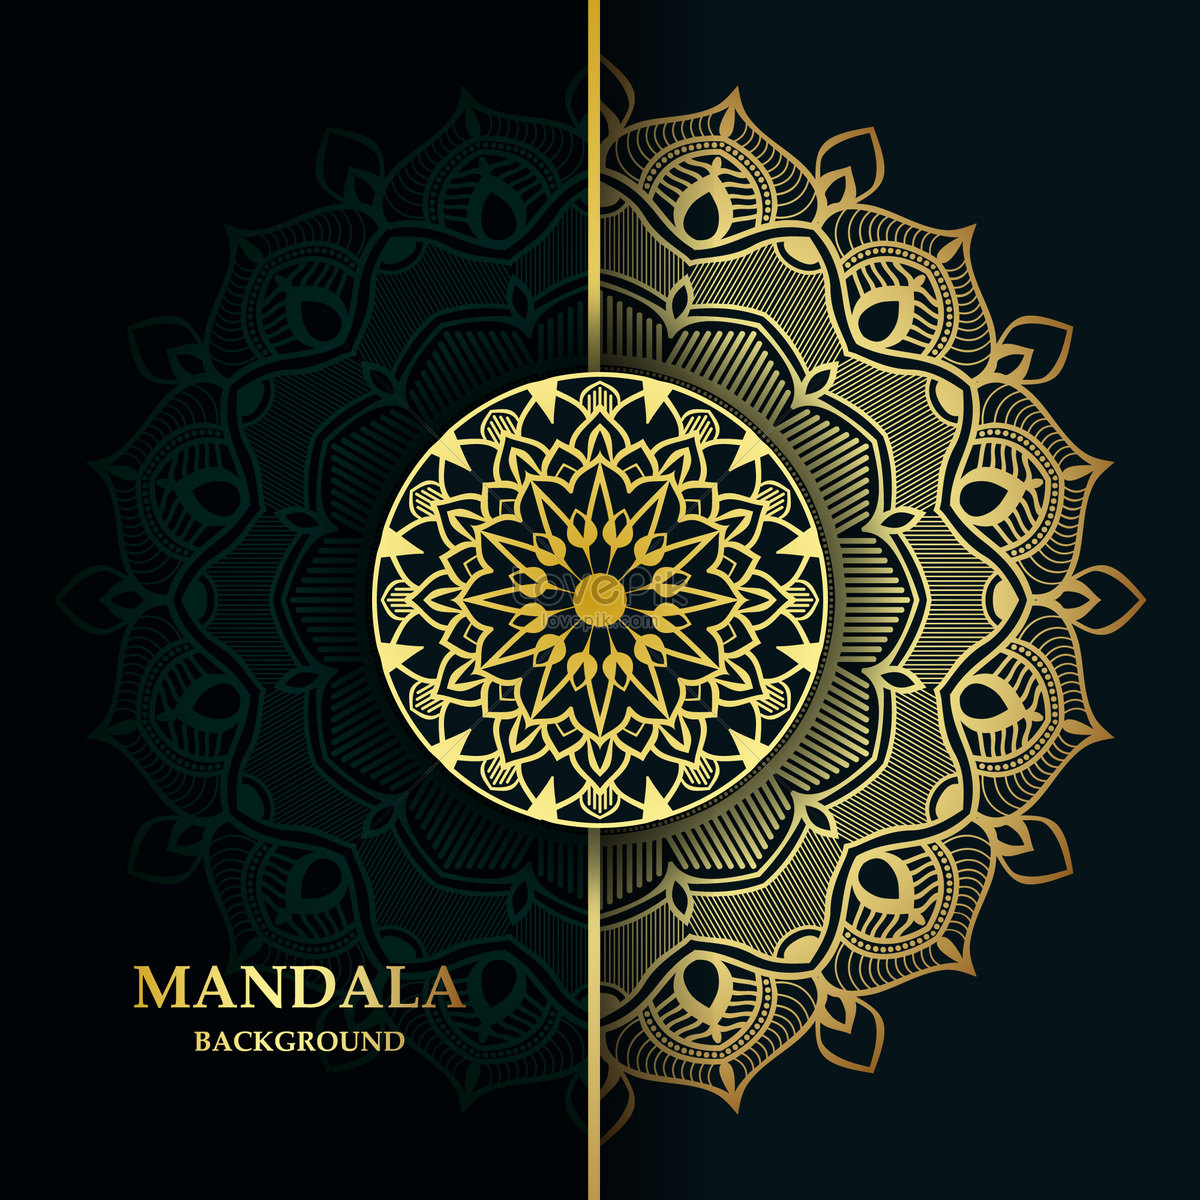 Mandala: Hãy khám phá một thế giới tuyệt đẹp của màu sắc, họa tiết và hình học với hình ảnh Mandala. Đây là một bức tranh đầy nghệ thuật và sự phá cách, người xem có thể cảm nhận được cảm giác tĩnh lặng và yên bình khi nhìn vào hình ảnh Mandala. 